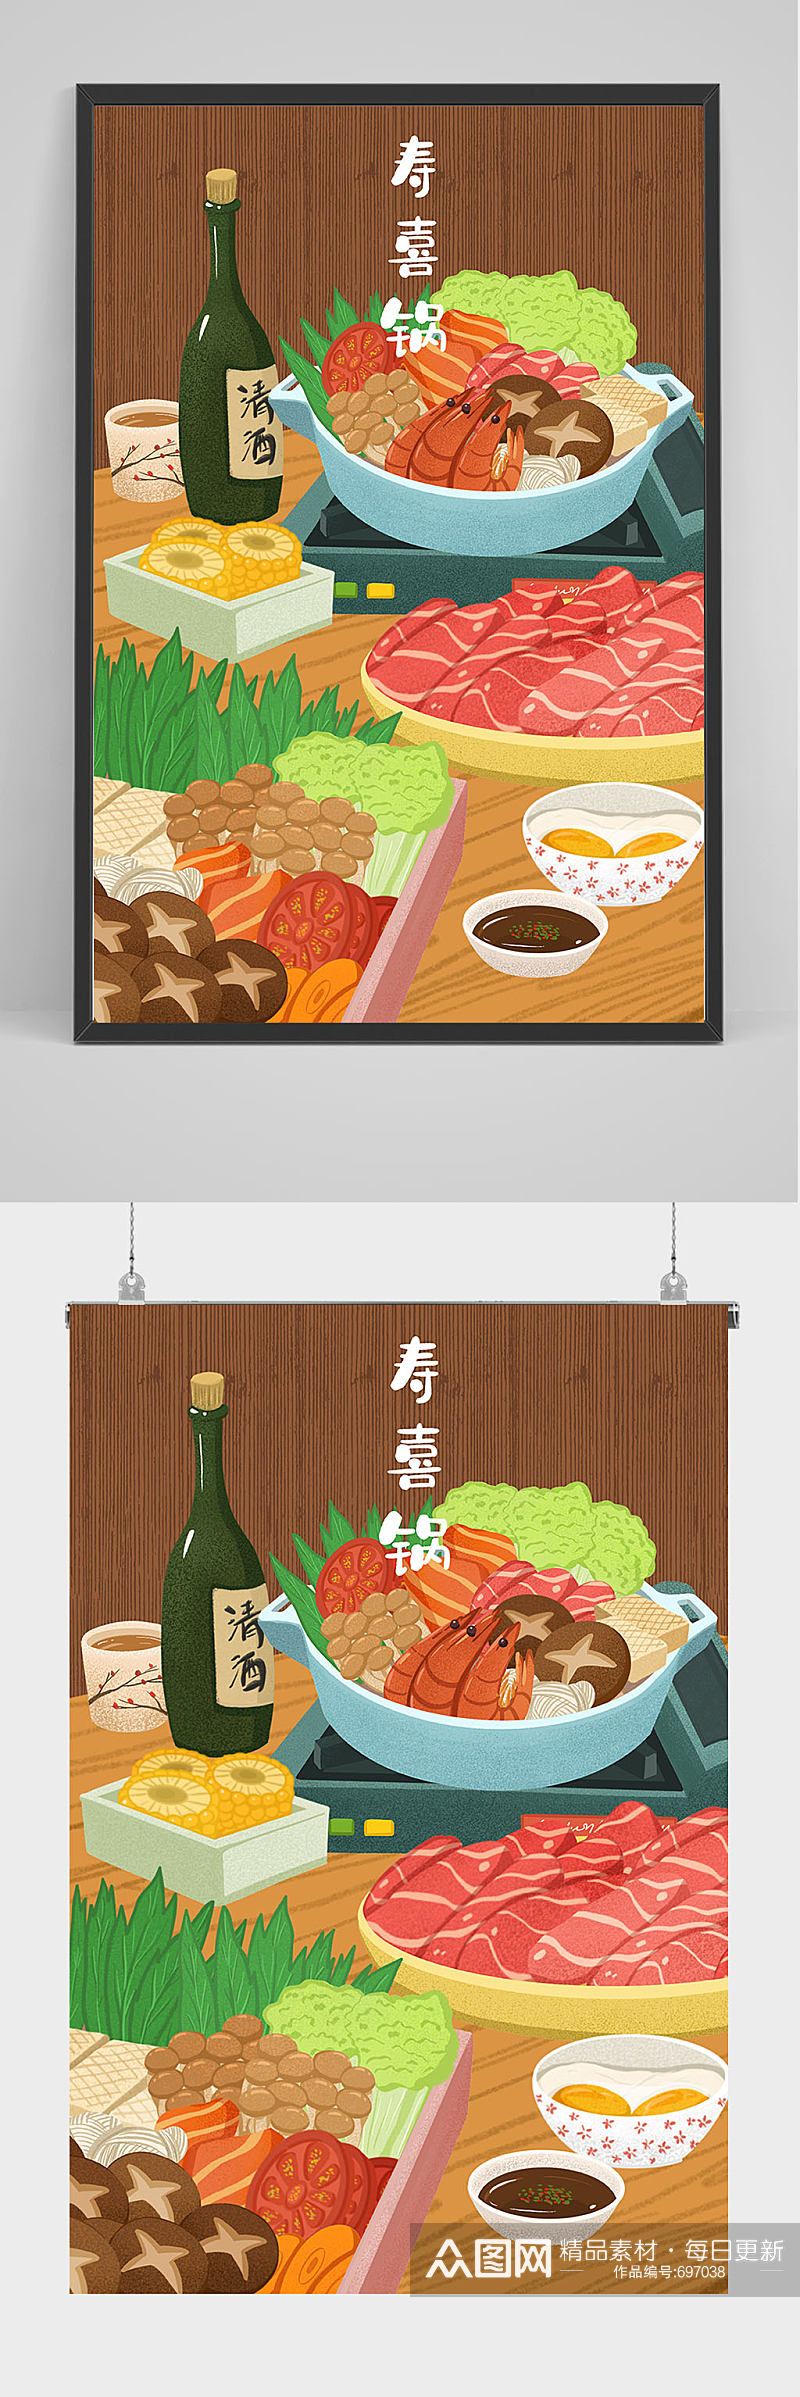 手绘火锅刷肉插画设计素材